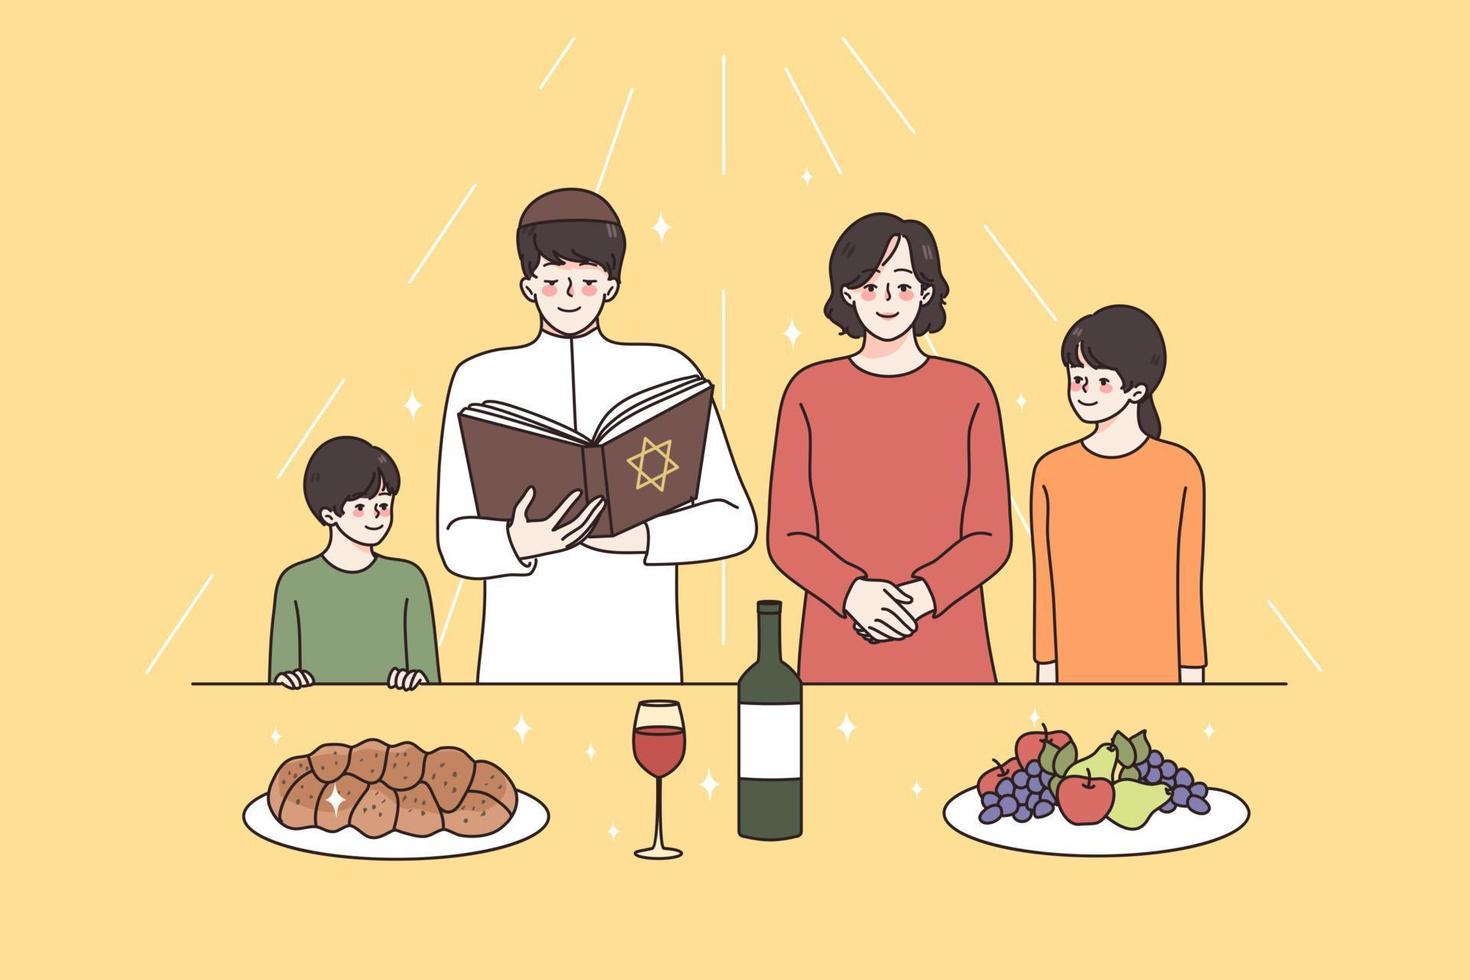 religieus onderwijs en geestelijkheid concept. Jood familie met kinderen staand met religie boek bidden allemaal samen voordat maaltijd vector illustratie